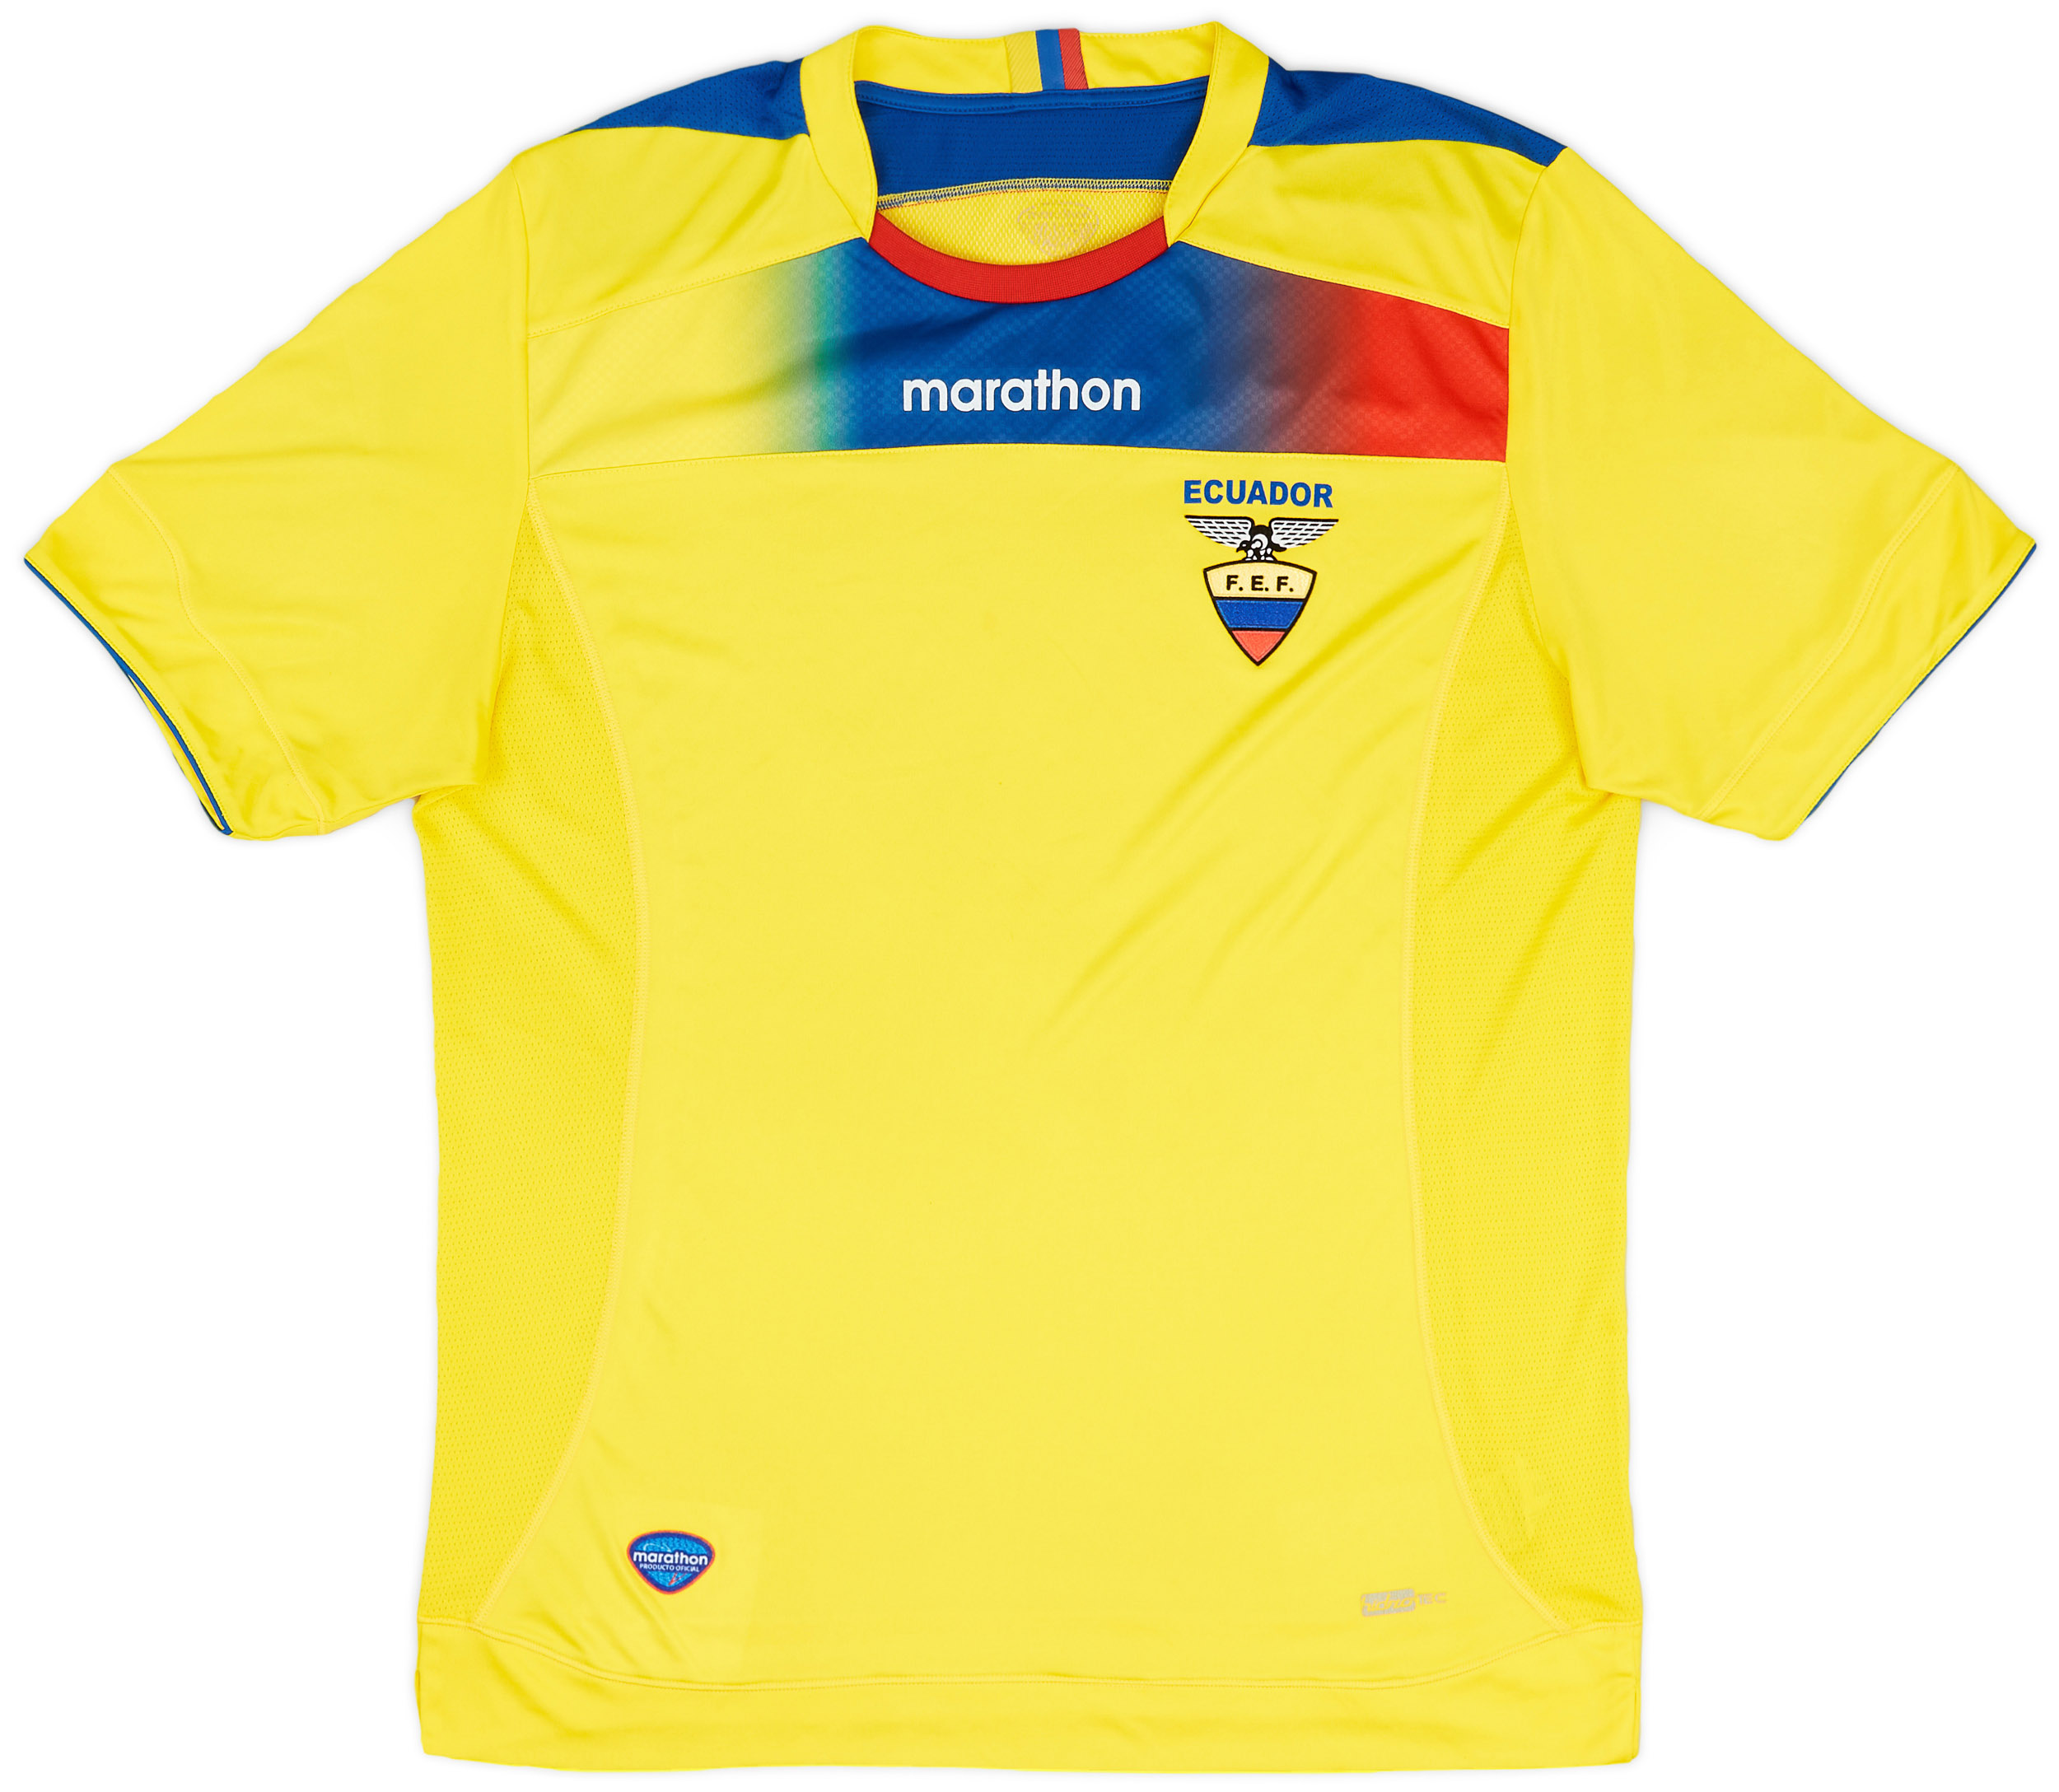 2011-12 Ecuador Home Shirt - 8/10 - ()